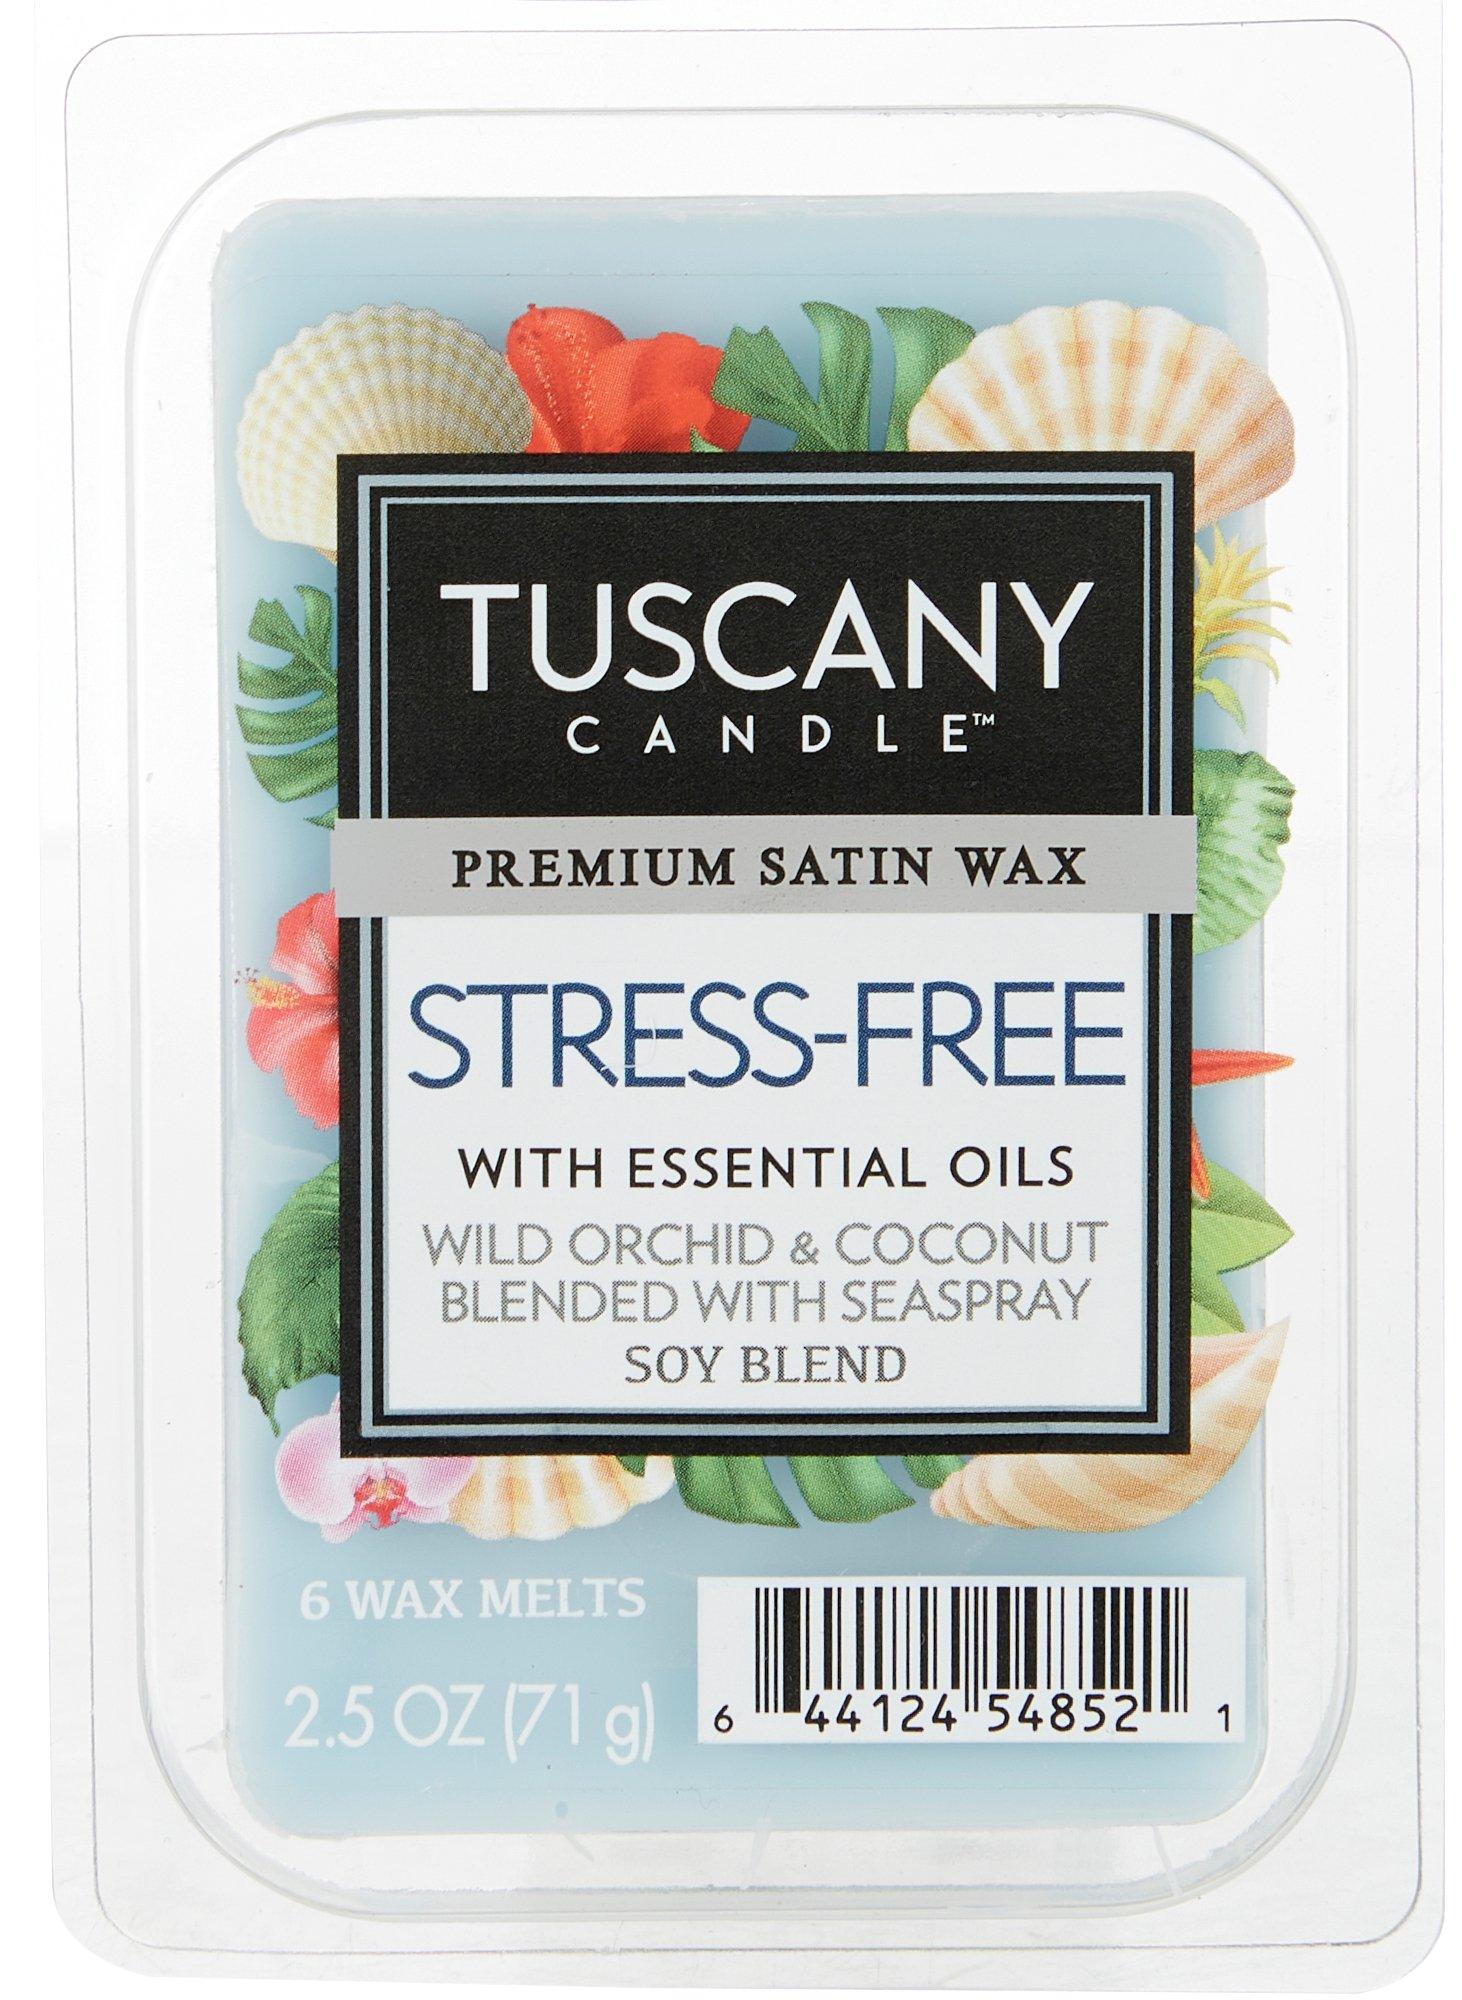 Tuscany Candle Sea & Sand Wax Melts - 2.5 oz